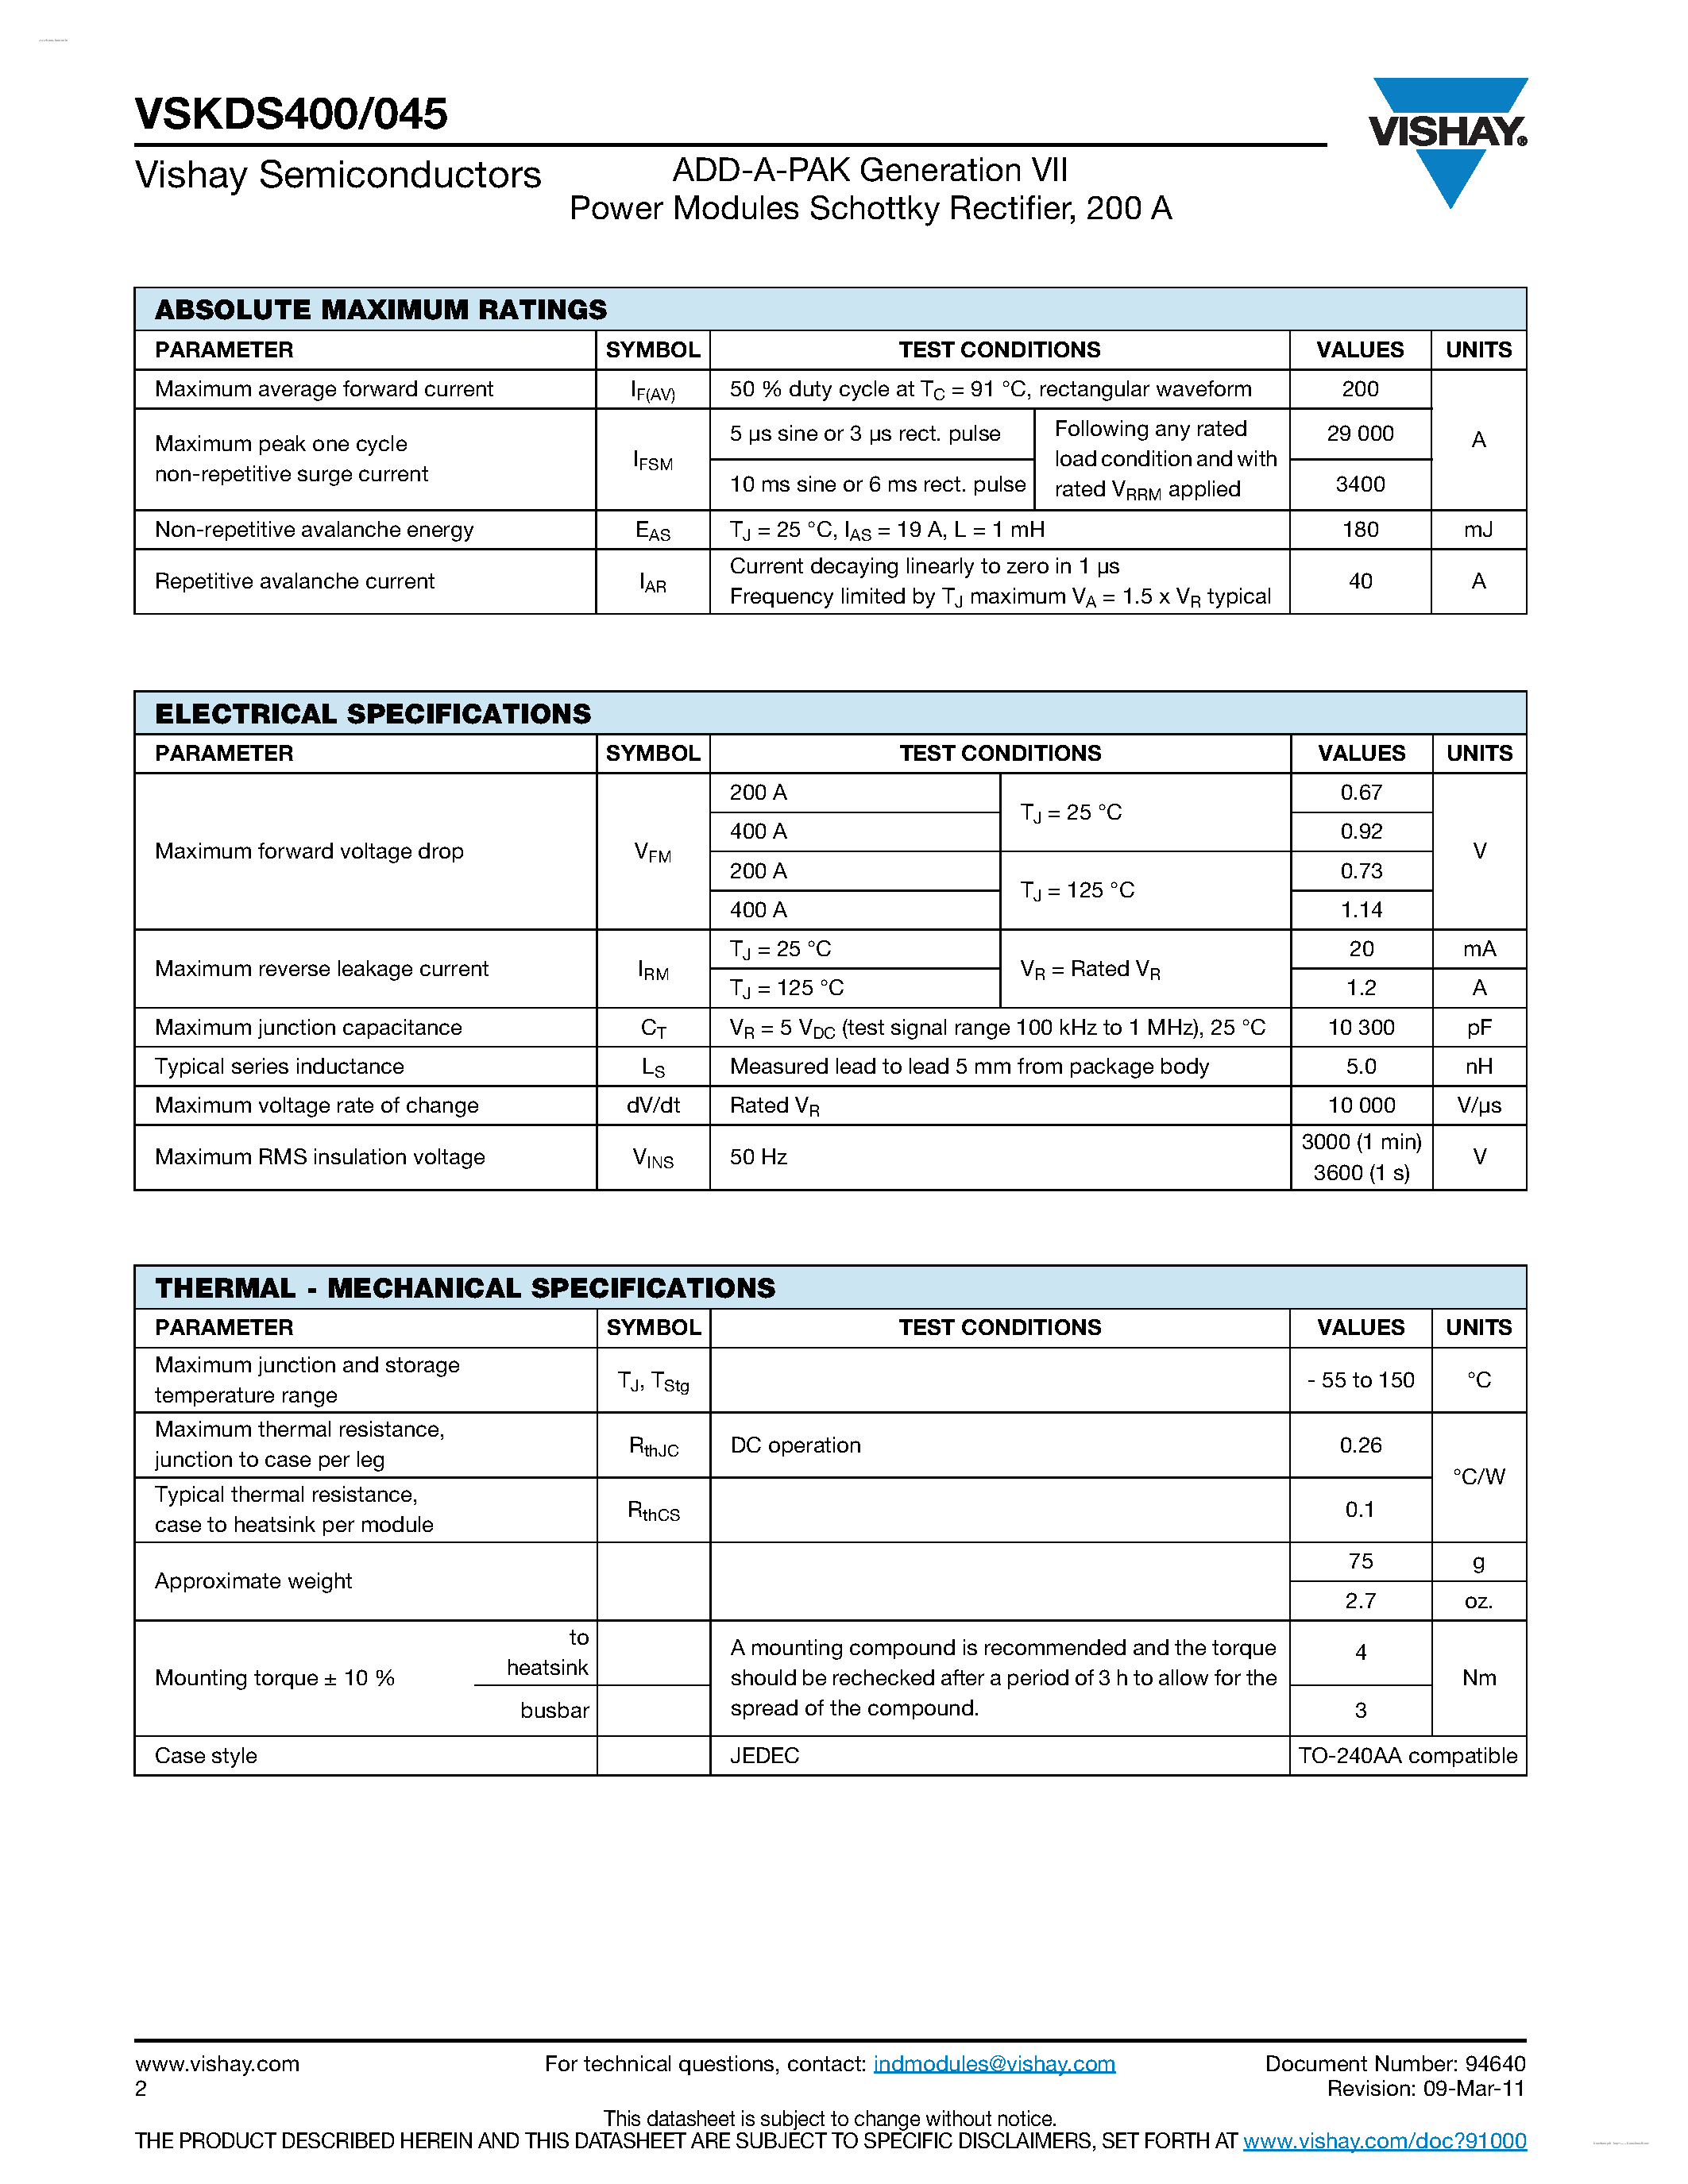 Datasheet VSKDS400/045 - ADD-A-PAK Generation VII page 2